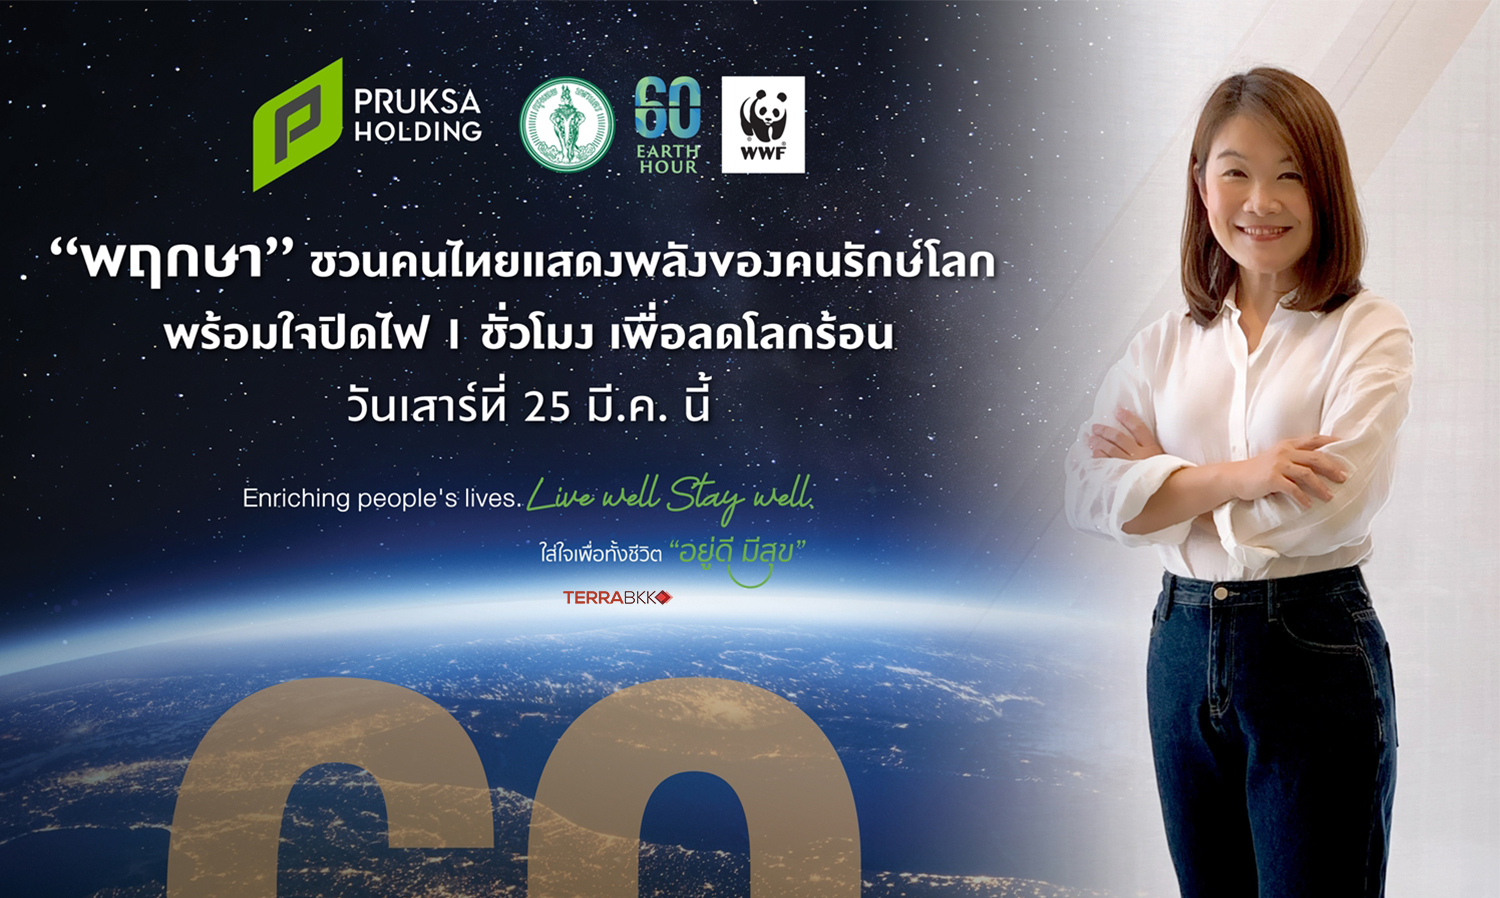 “พฤกษา” ชวนคนไทยแสดงพลังของคนรักษ์โลก  พร้อมใจปิดไฟ 1 ชั่วโมง เพื่อลดโลกร้อน เสาร์ที่ 25 มี.ค.นี้